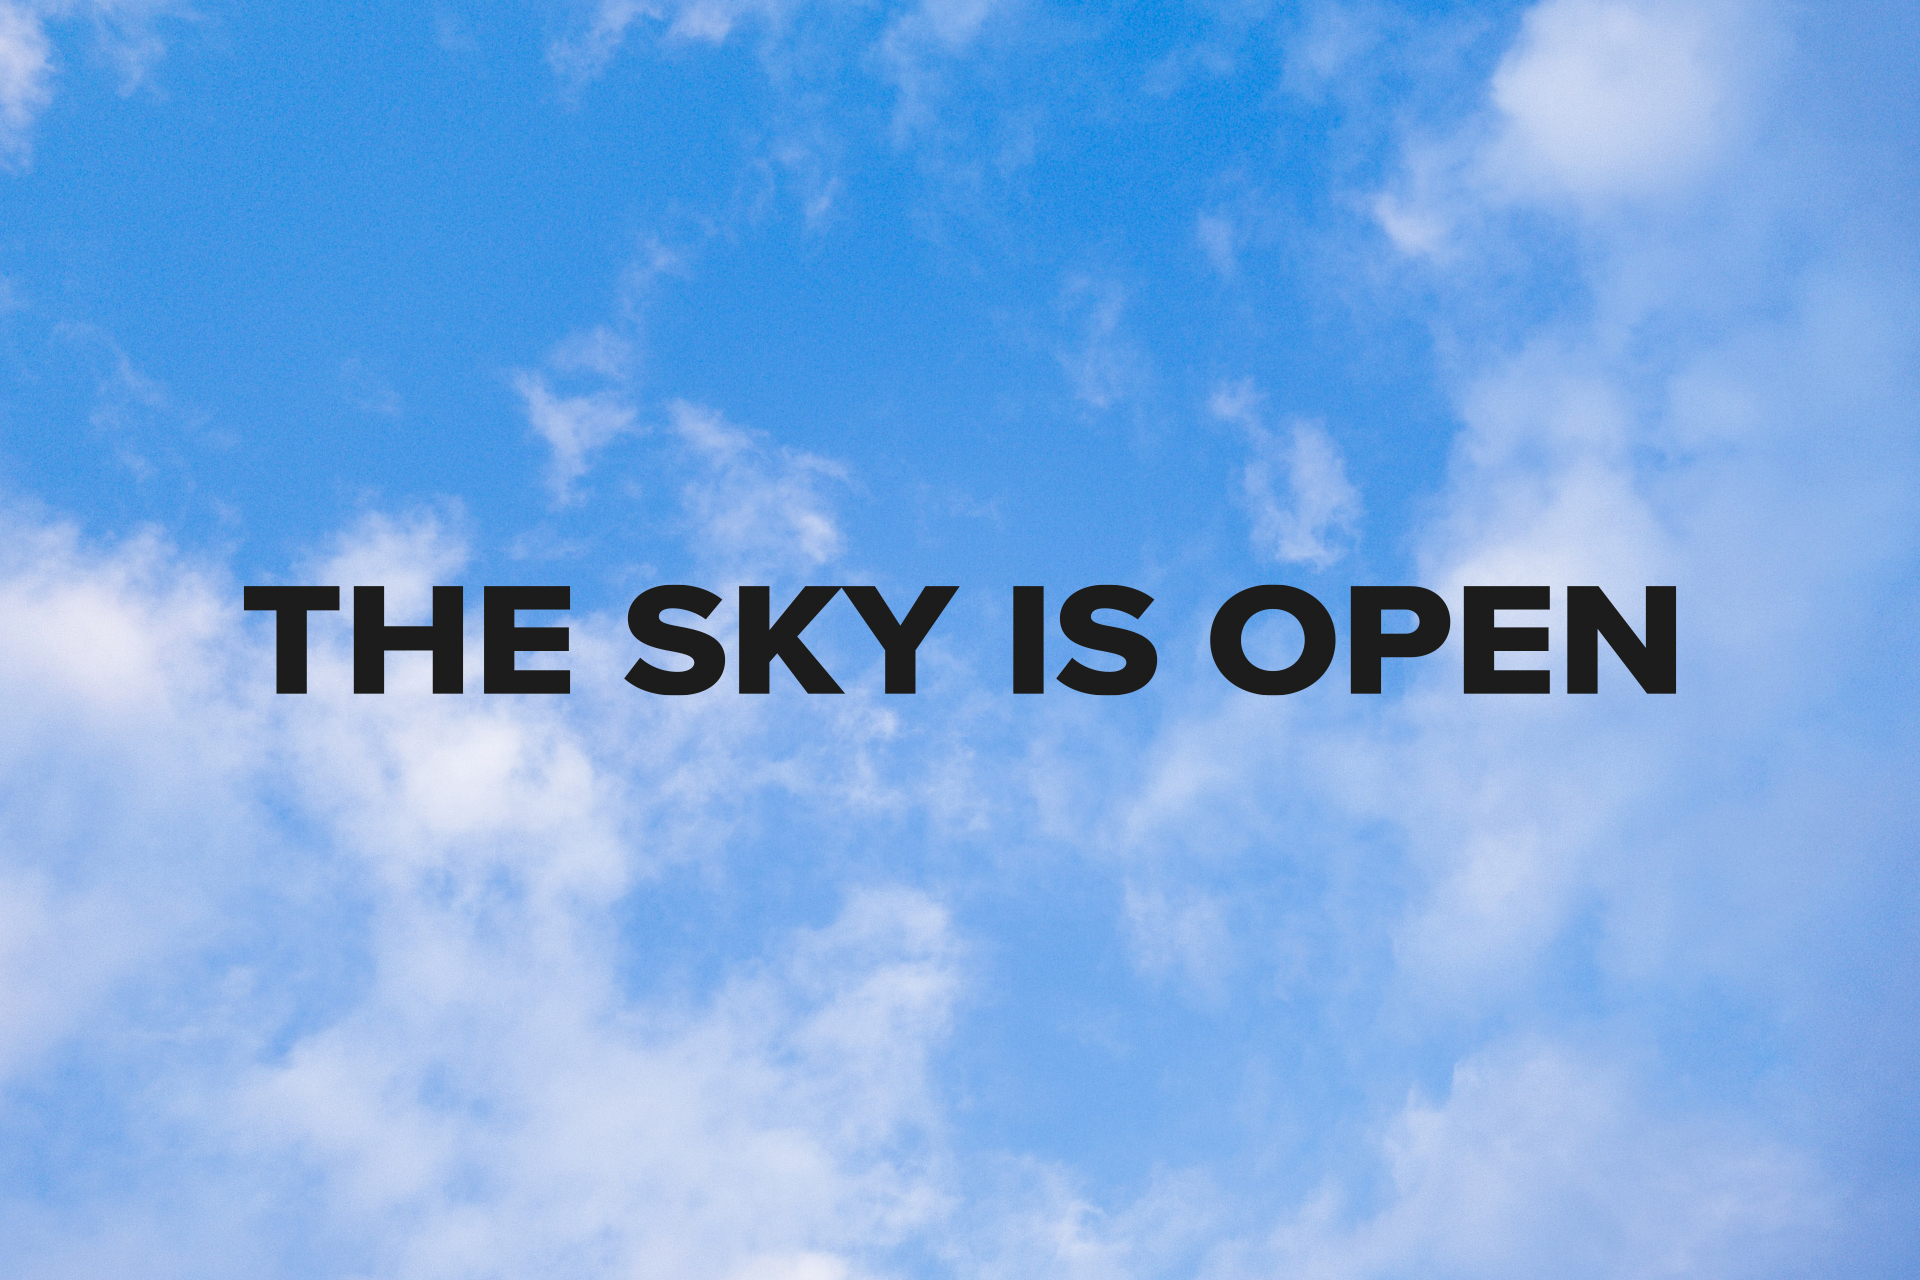 Zdjęcie nieba z napisem "the sky is open"